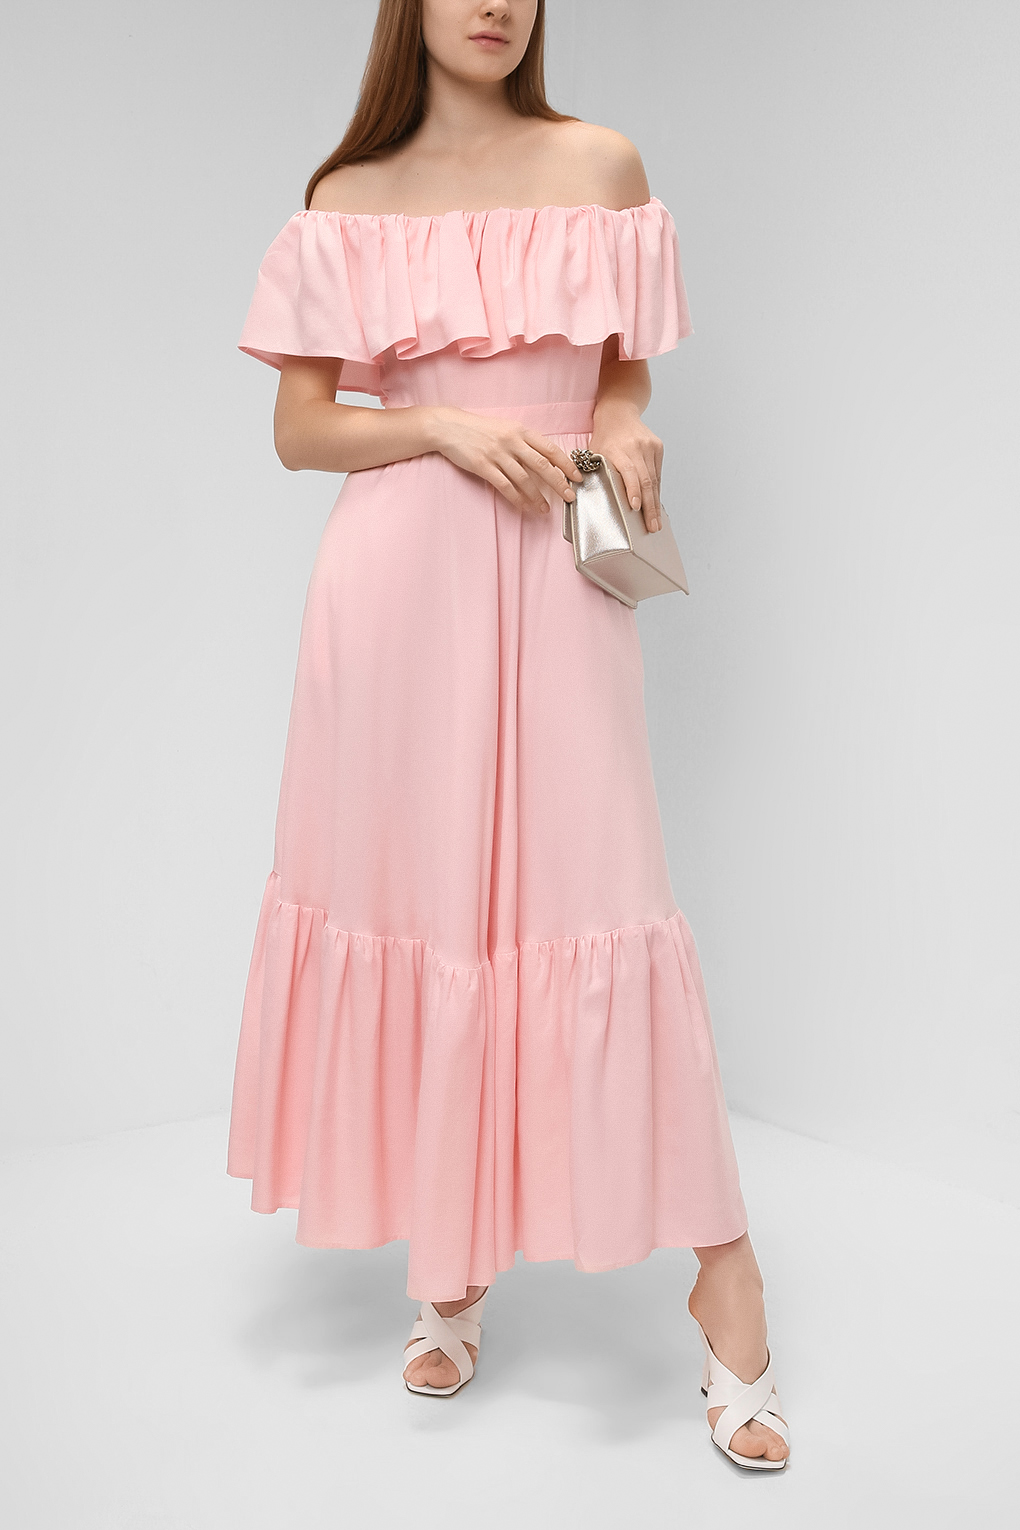 фото Платье женское paola ray pr120-3086 розовое l